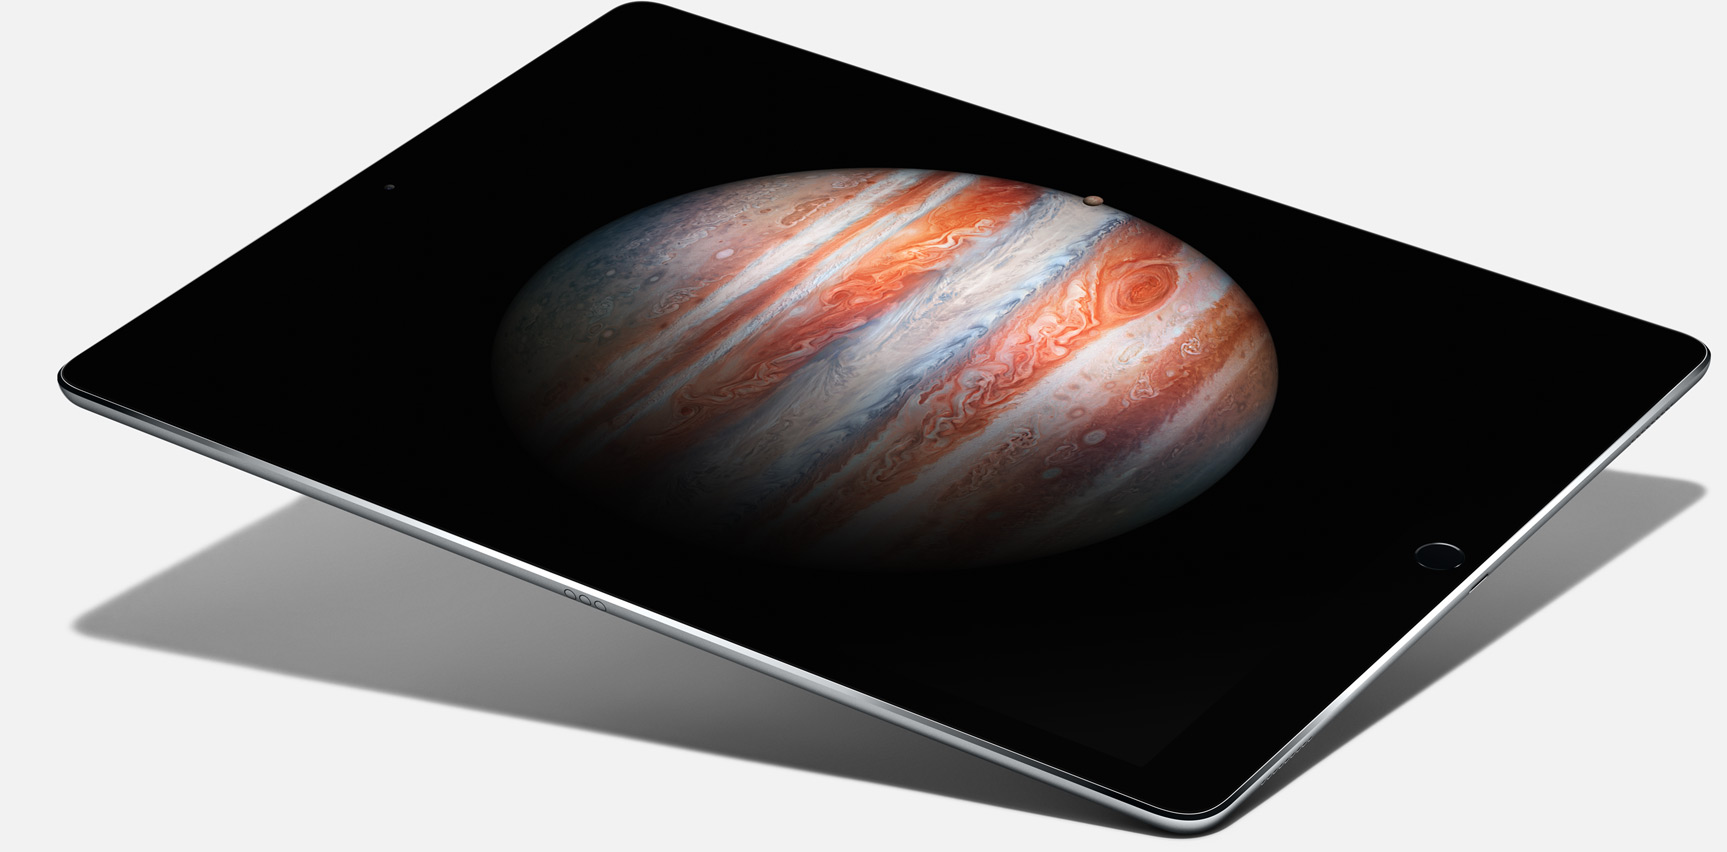 Immagine pubblicata in relazione al seguente contenuto: Le vendite degli iPad Pro da 12.9-inch cominciano il giorno 11 novembre | Nome immagine: news23294_Apple-iPad-Pro_1.jpg